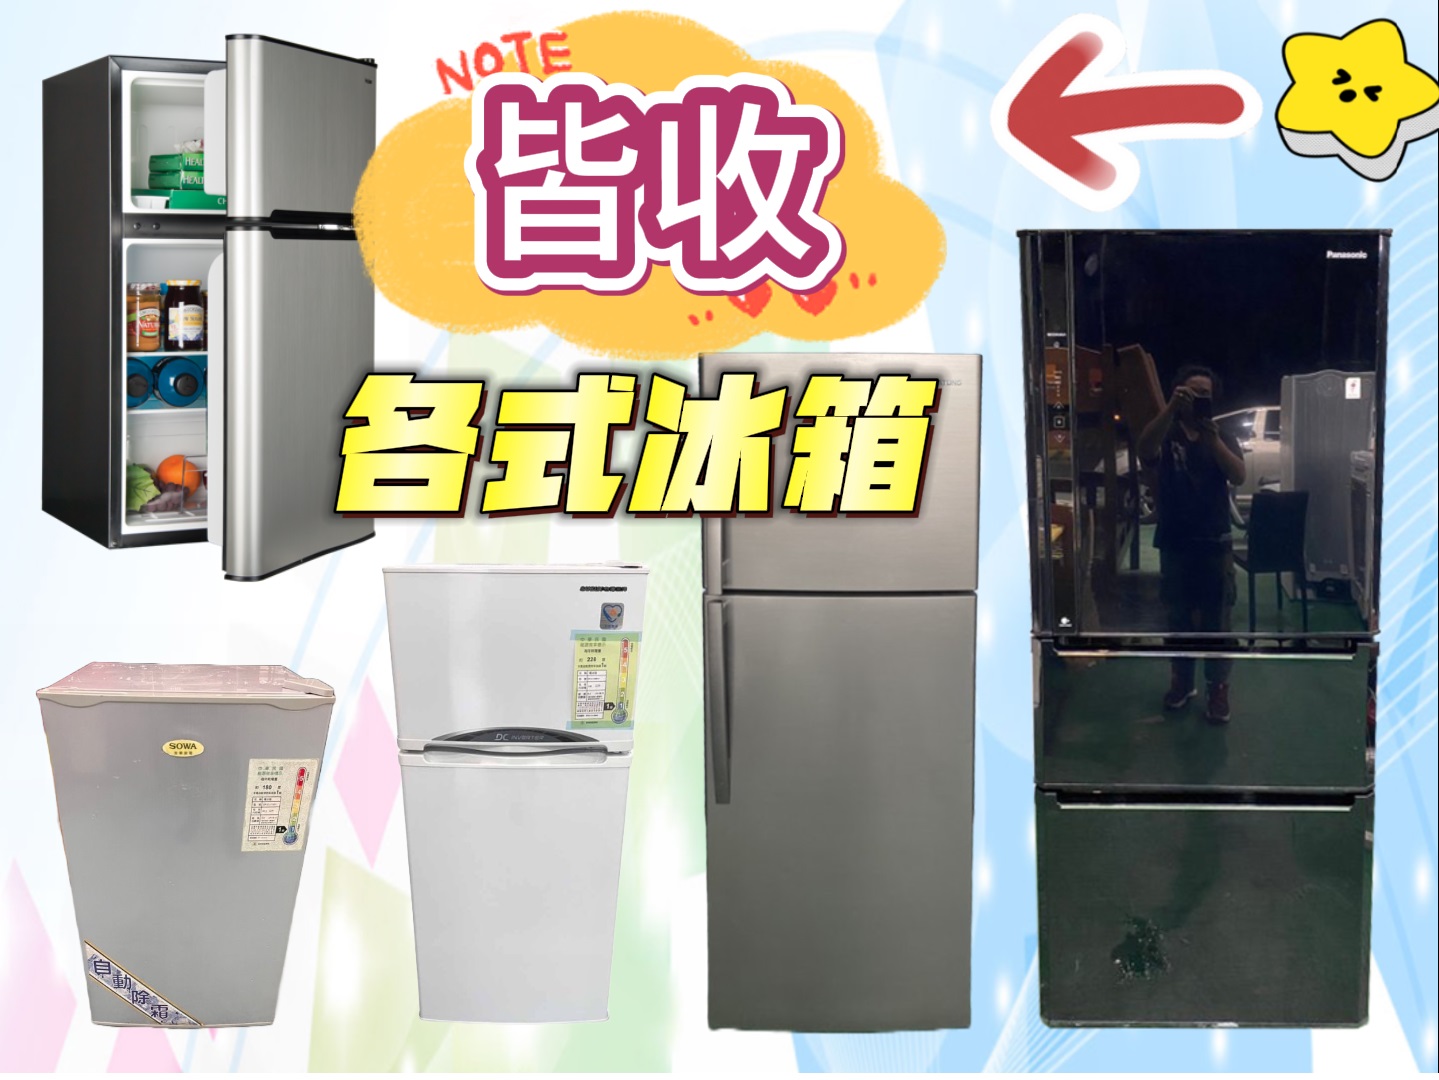 新竹~專業收購二手家電~冷氣 冰箱 洗衣機 現金收購免費搬運0967060888 - 20230606133324-42126975.jpg(圖)